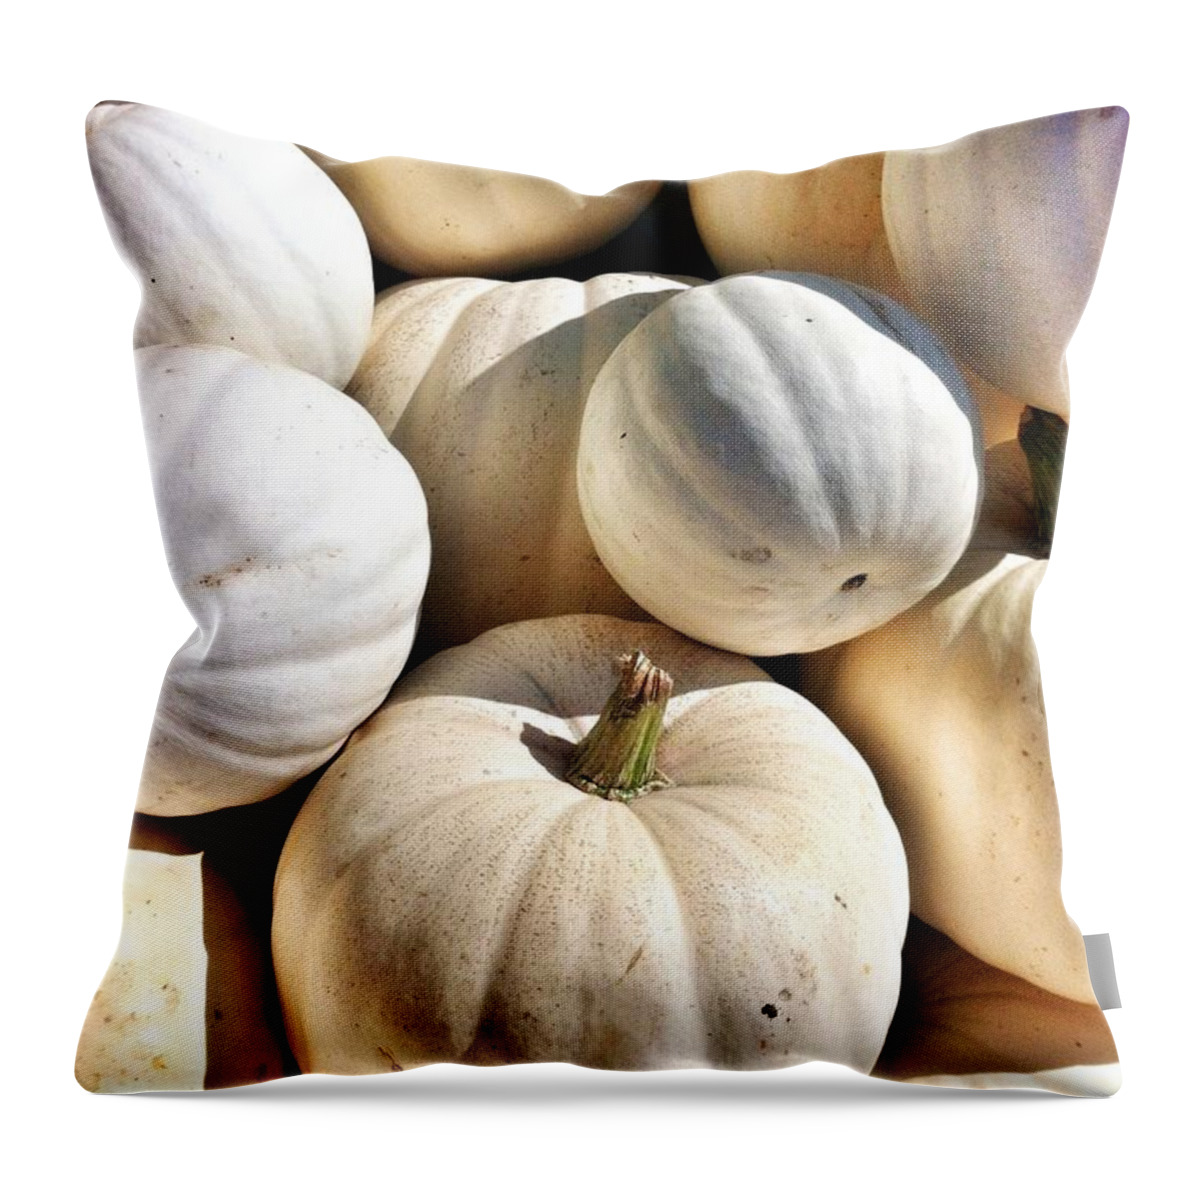 White Pumpkins Throw Pillow featuring the photograph What Ghost Pumpkins by Susan Garren